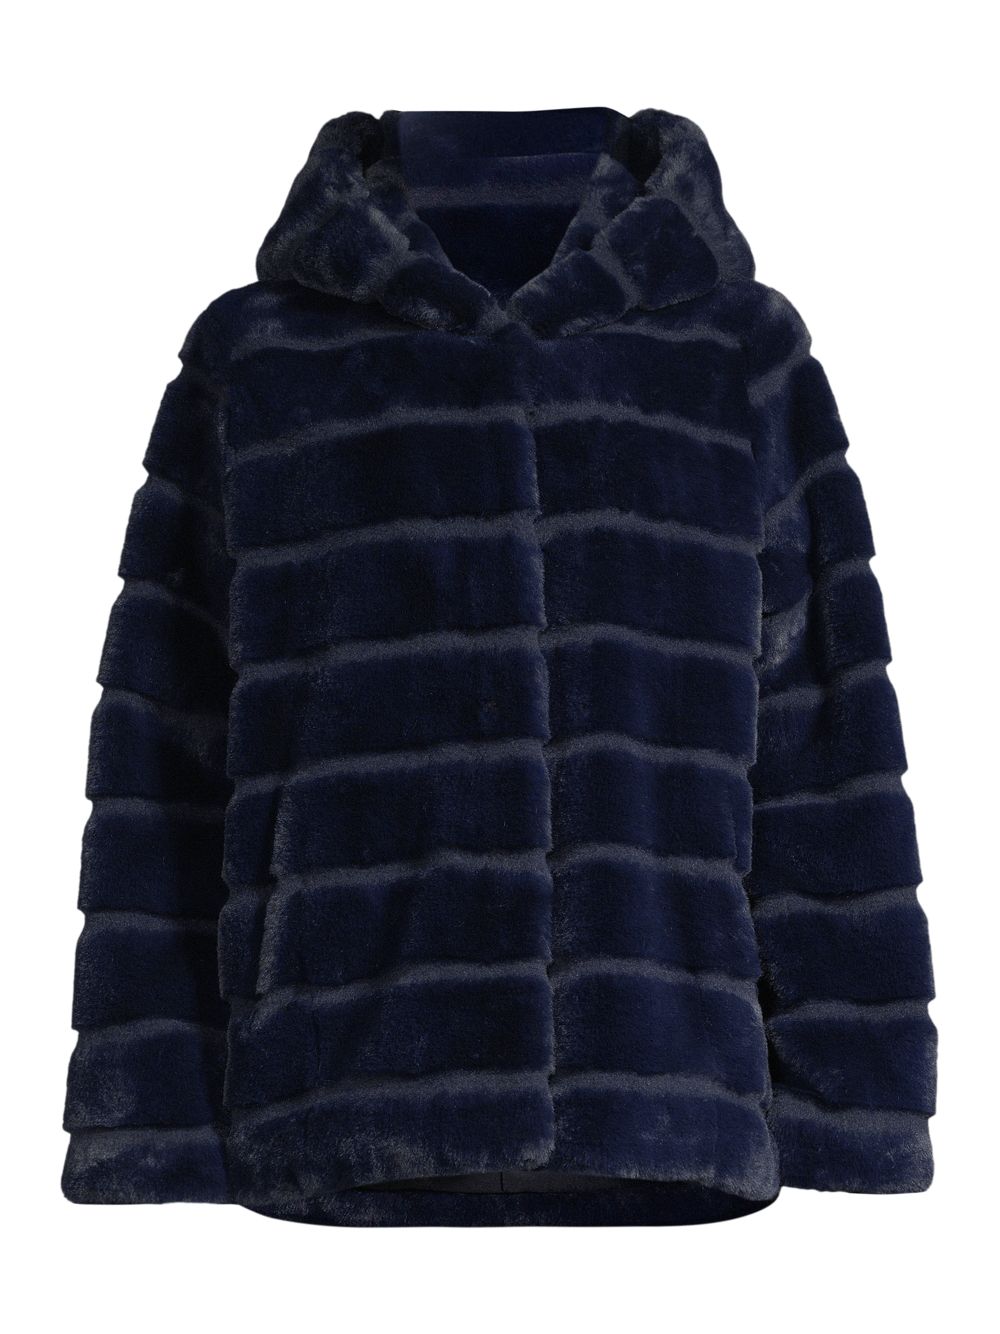 Короткое пальто Goldie с капюшоном из искусственного меха Apparis, синий пальто с капюшоном из искусственного меха 3 12 лет 4 года 102 см синий